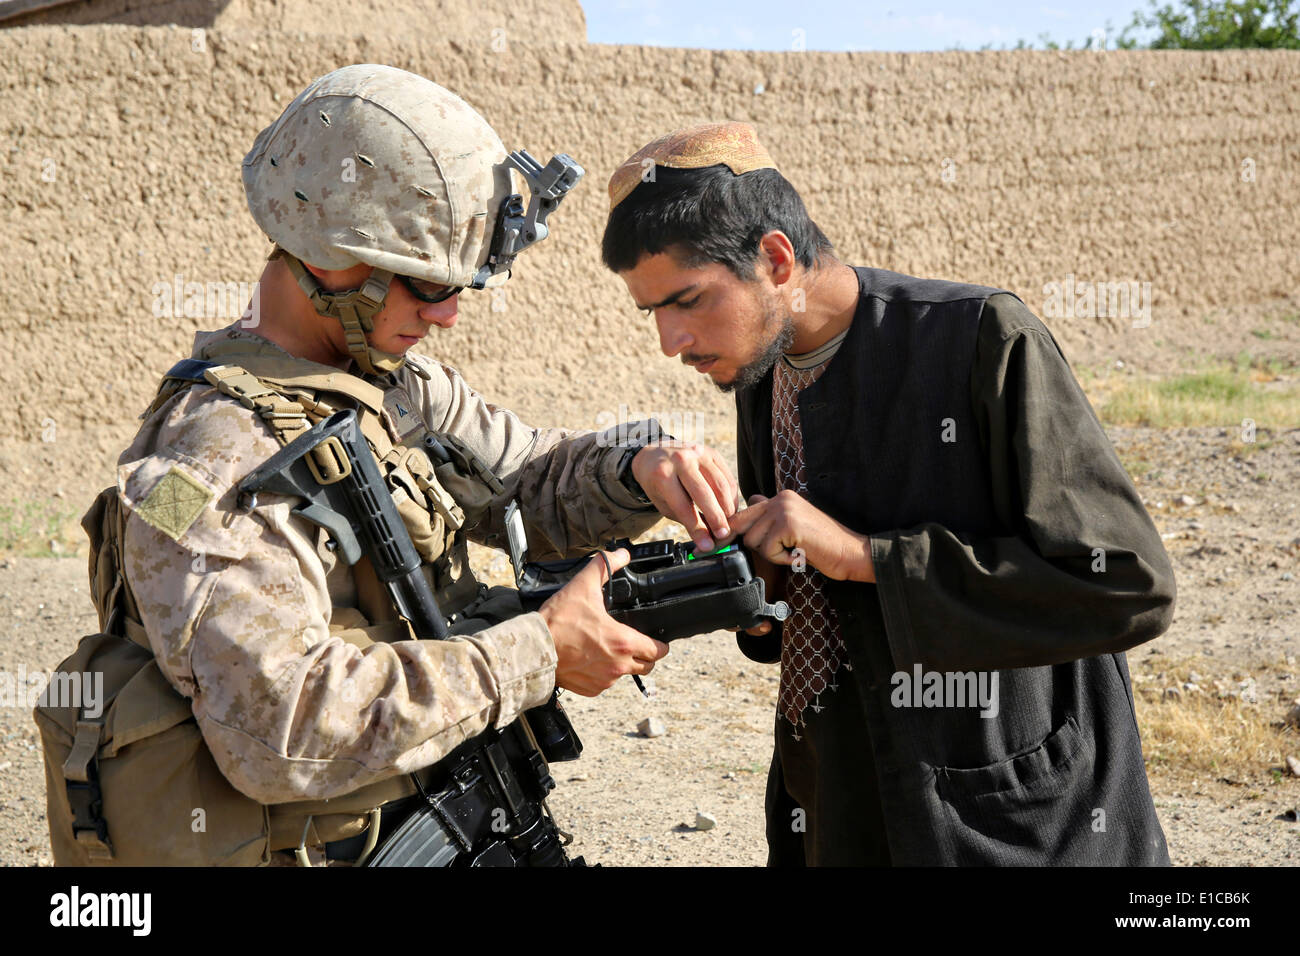 Un Marine américain avec le 1er Bataillon, 7e Régiment de Marines, utilise un appareil de détection et d'enrôlement biométrique sur un villageois au cours d'une mission contre-insurrectionnelle le 15 mai 2014 à Larr Village, province de Helmand, en Afghanistan. Banque D'Images